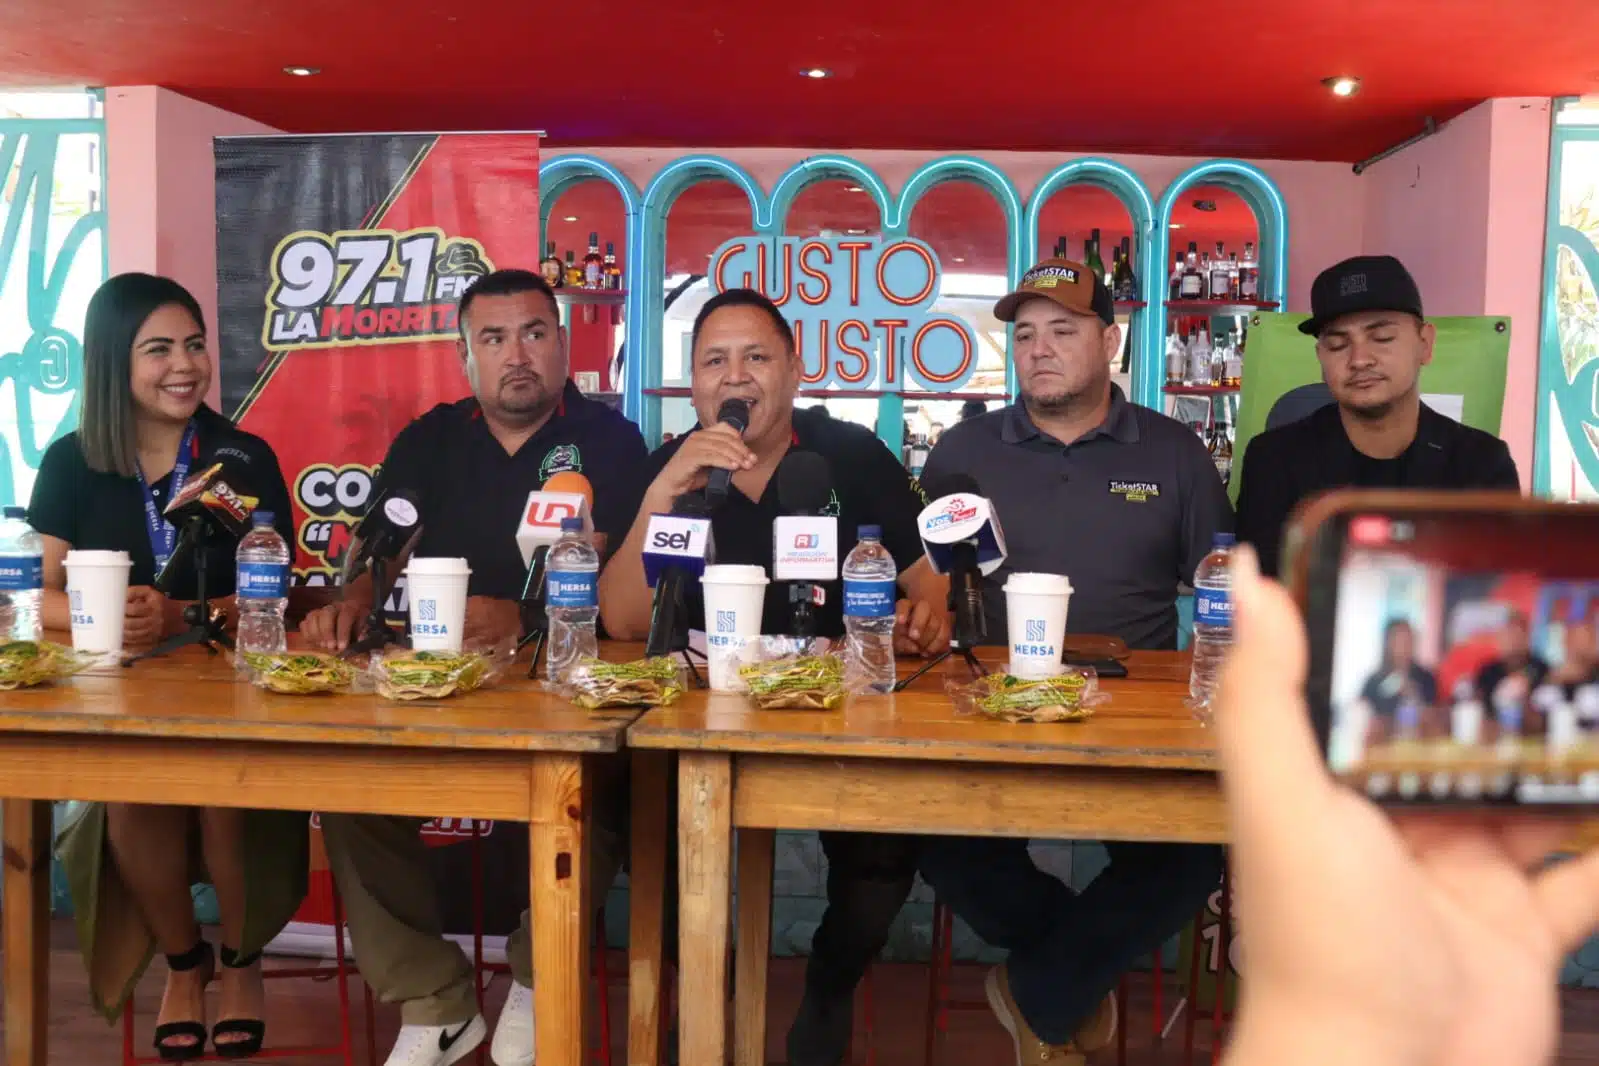 Conferencia de prensa que promociona que estará el Grupo Marca Registrada en Mazatlán